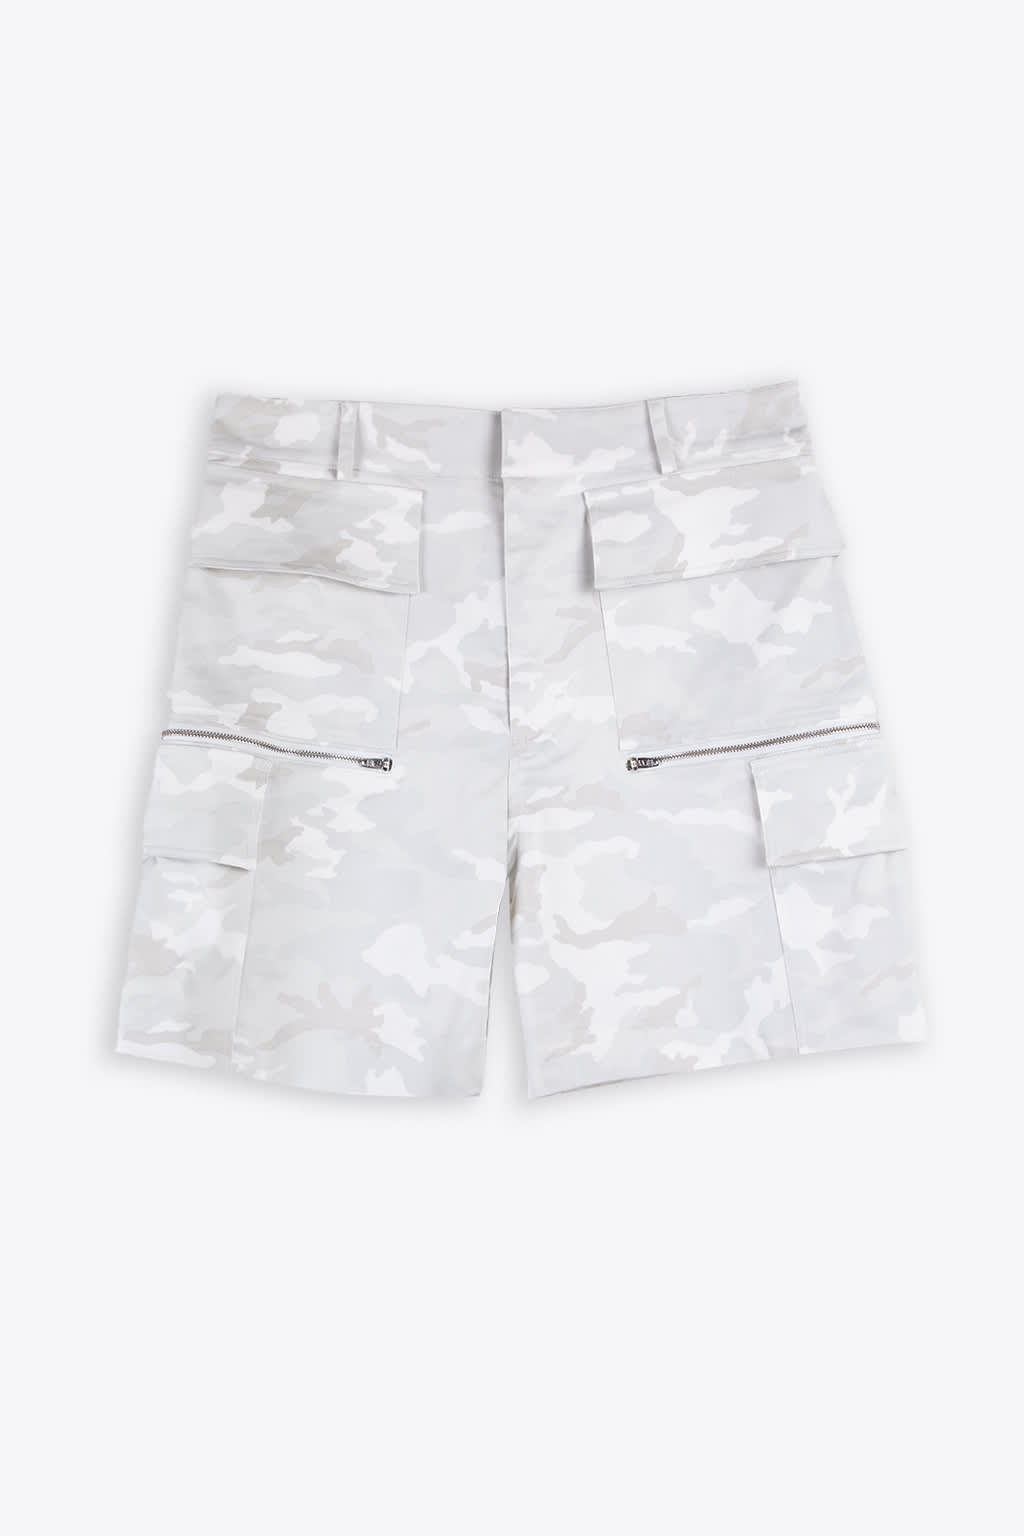 Alyx Kids' Cargo Short Grey Camouflage Cotton Cargo Short - Cargo Short In Bianco/grigio